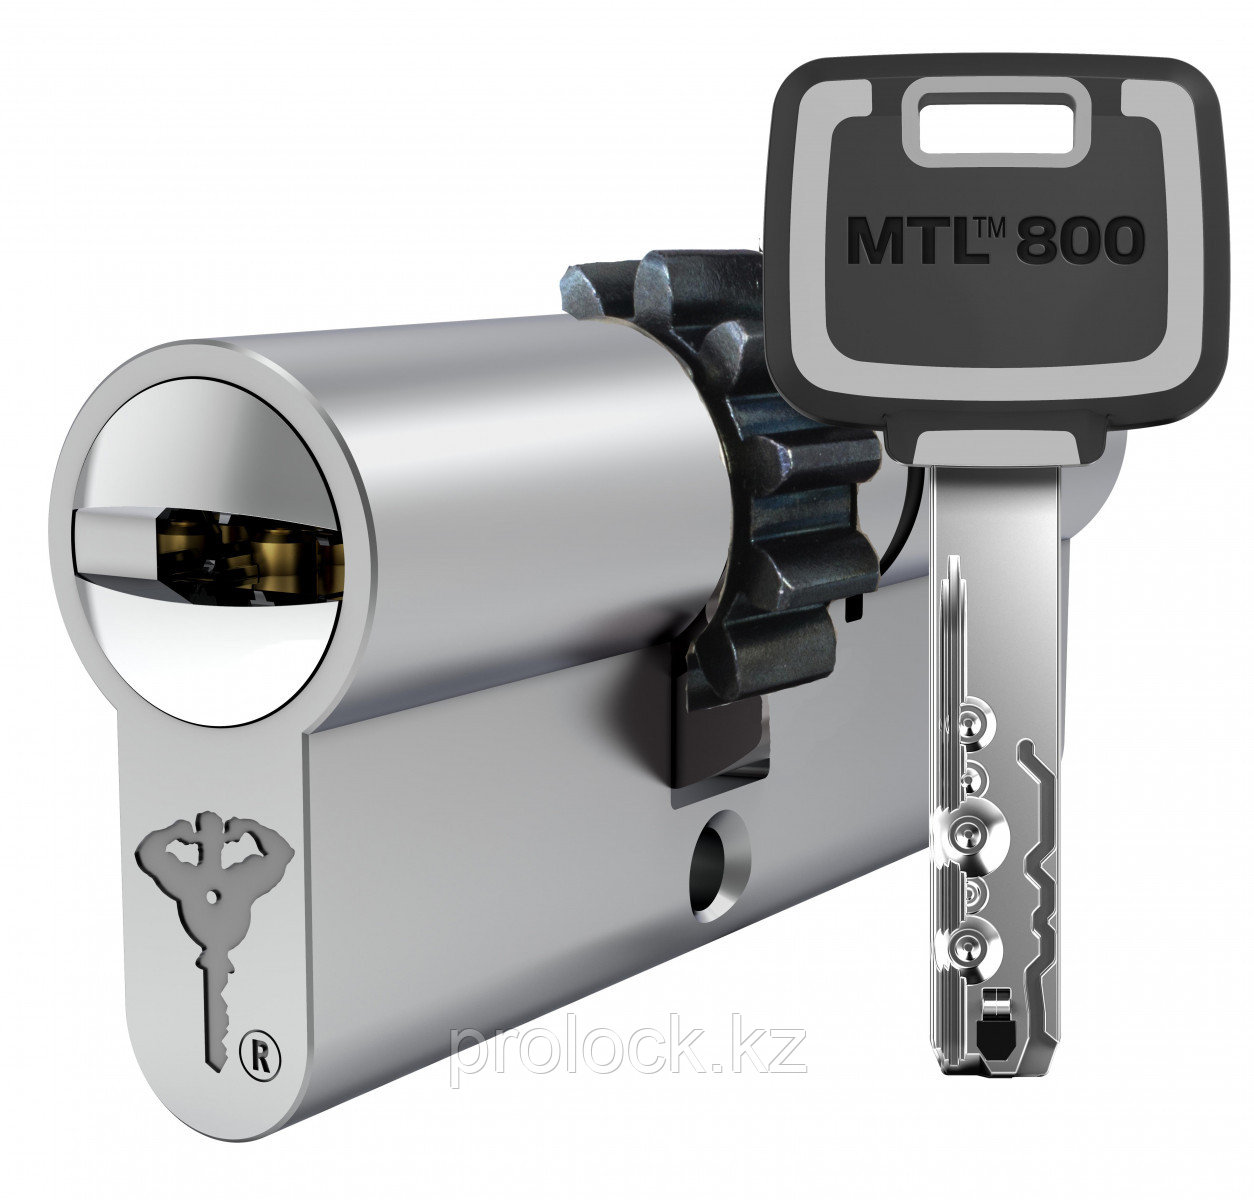 Сердцевина Mul-T-lock MT5+ 45/60 (105) - Новое поколение высокосекретных цилиндров